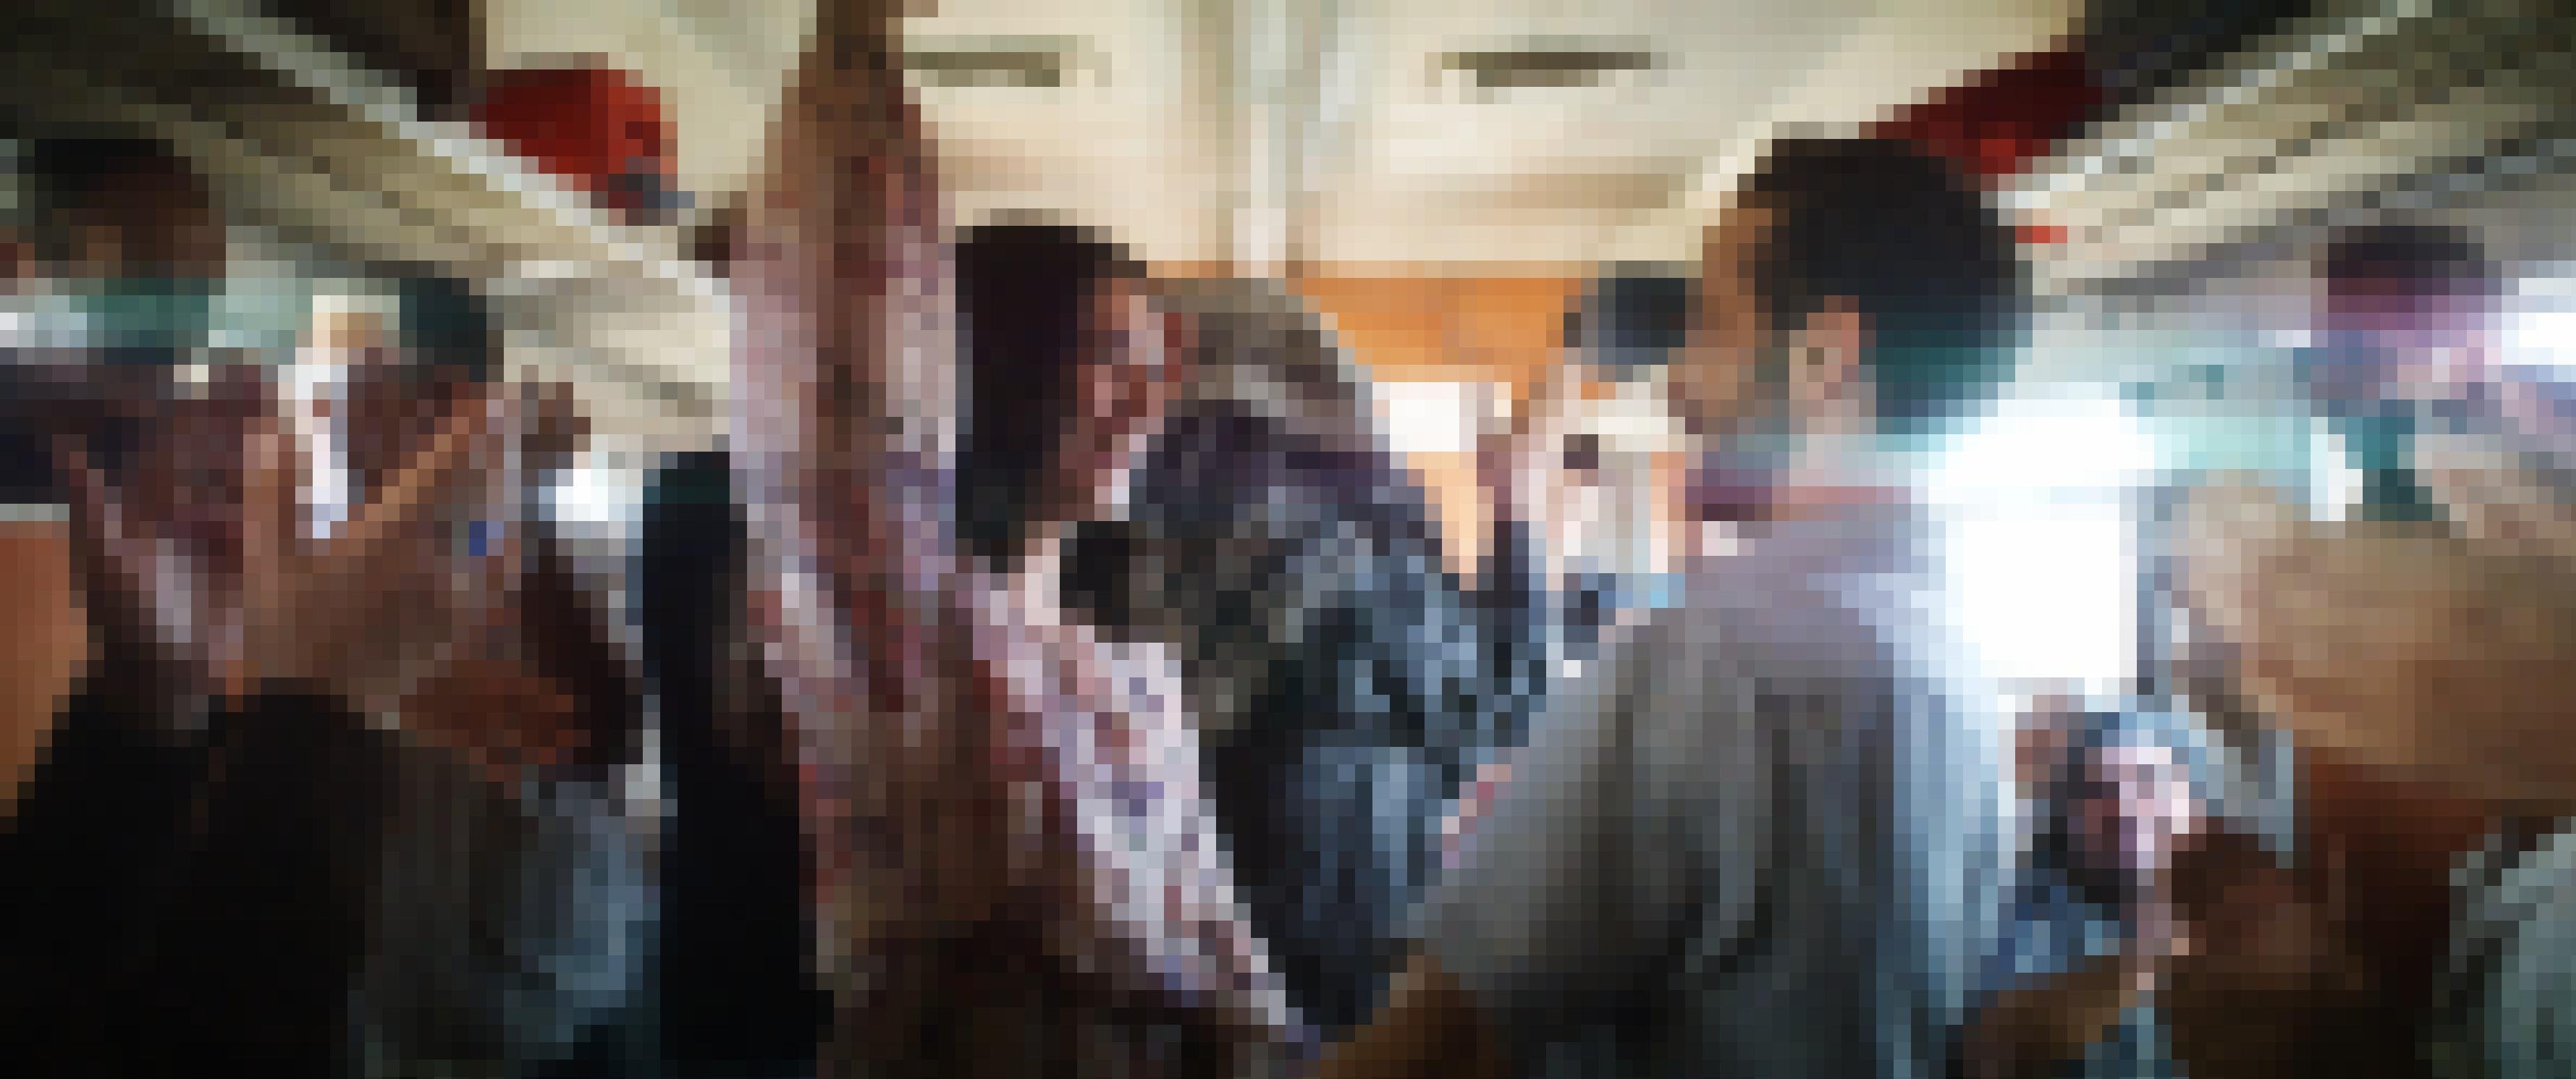 In einem Zug tanzen Abeer und Ali umringt von klatschenden Passagieren.